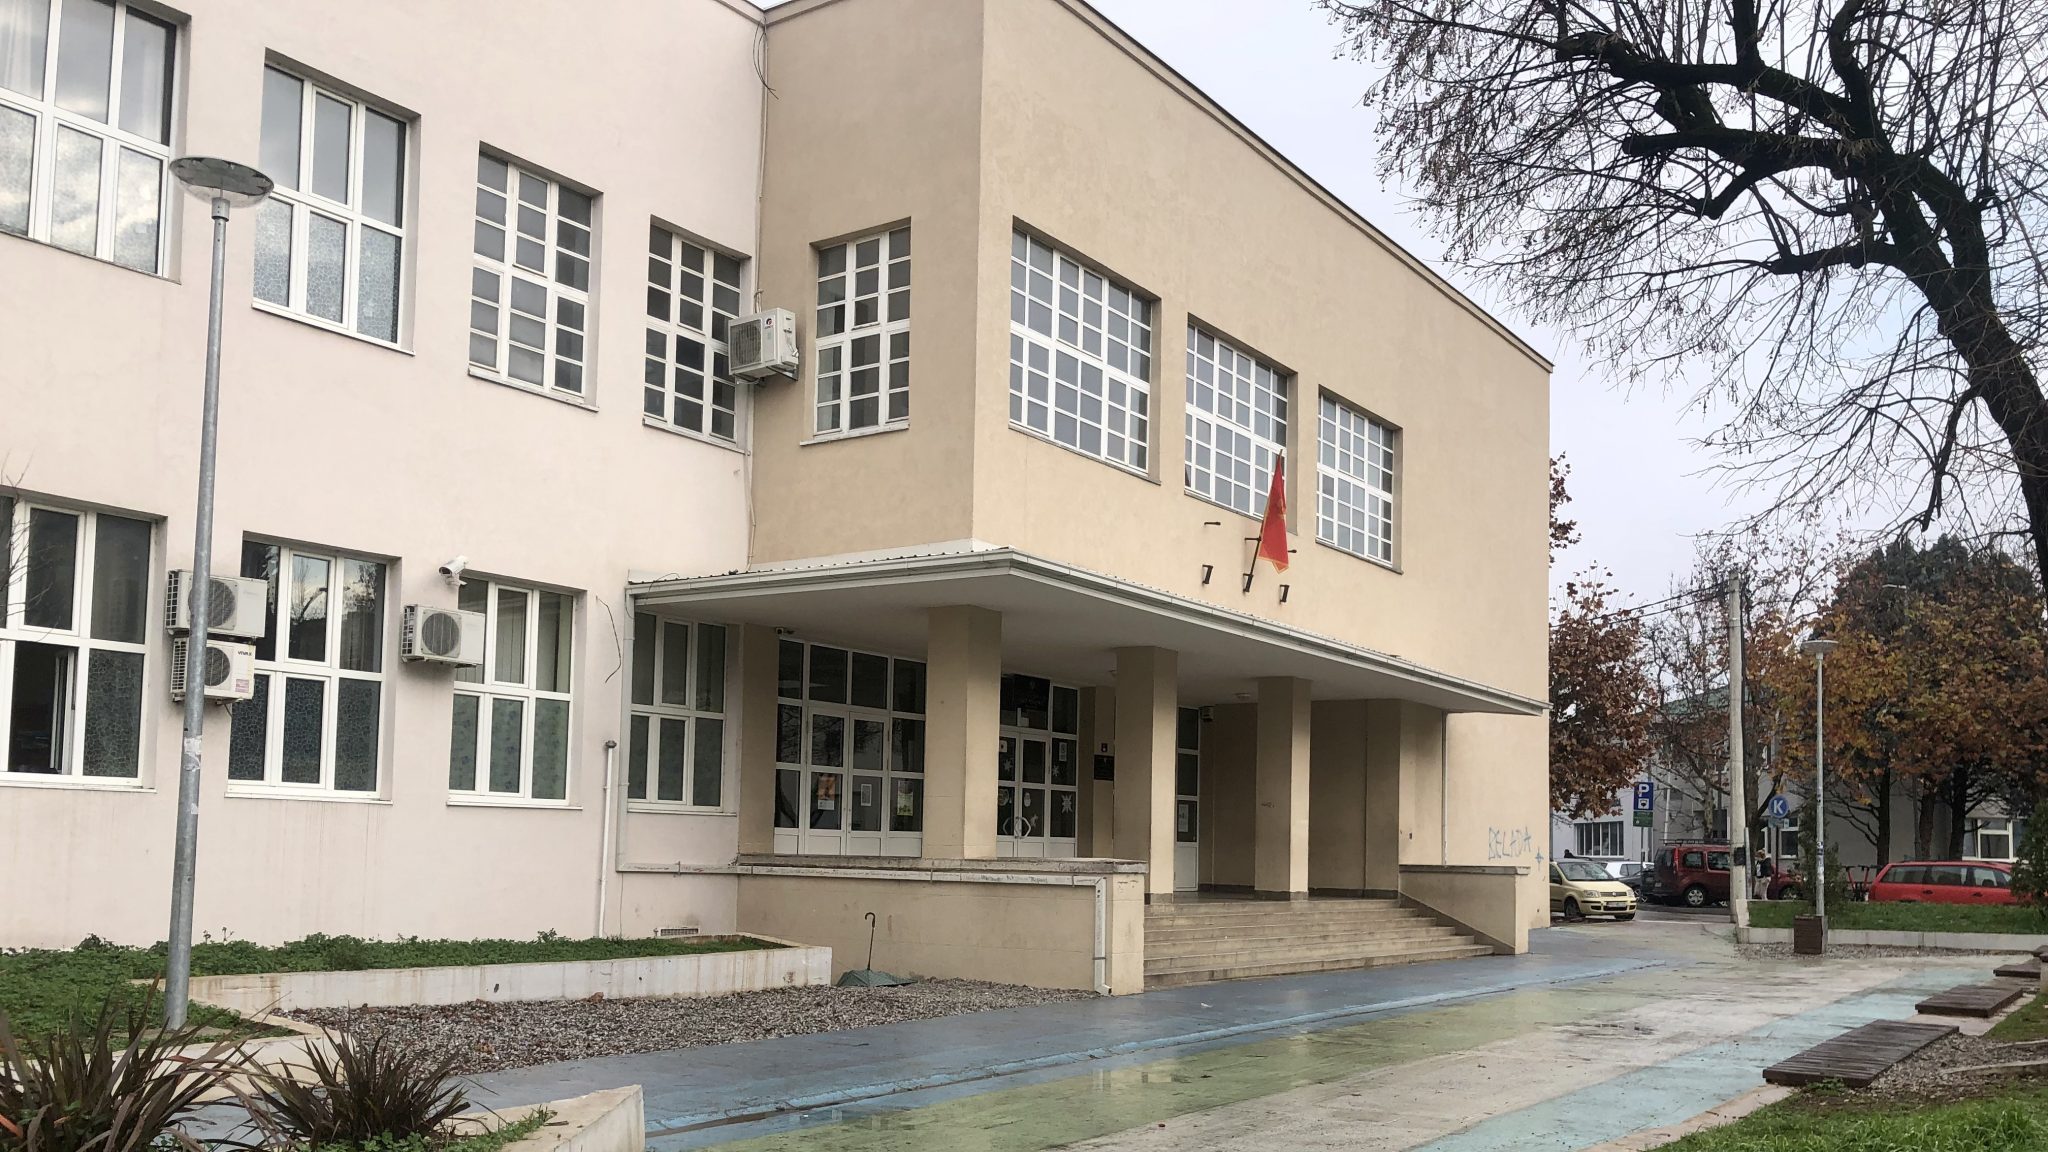 Osnovna škola "Savo Pejanović" u Podgorici, Crna Gora. Foto: BIRN/Samir Kajošević